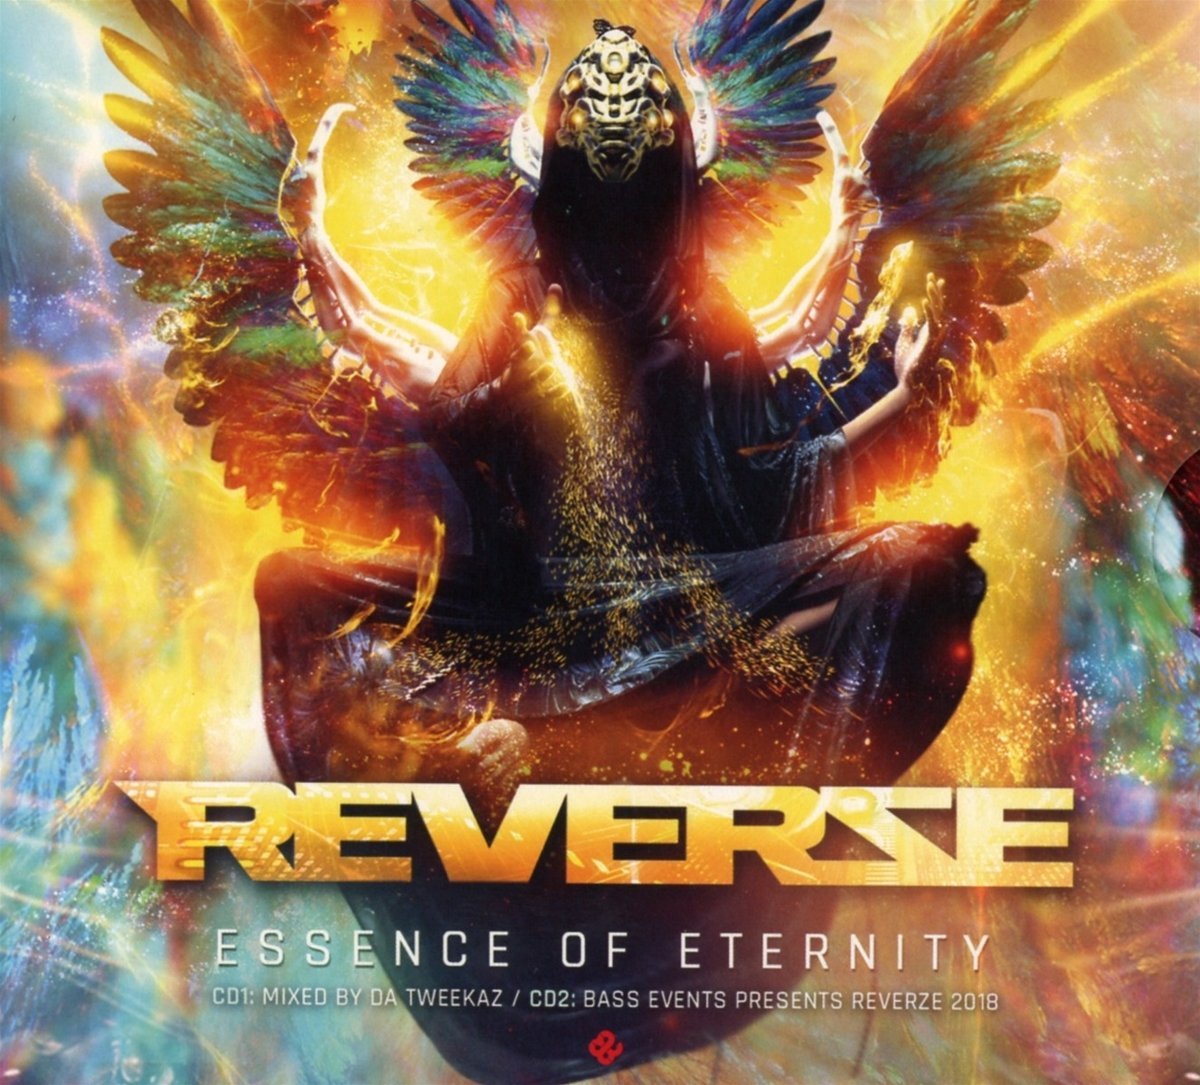 Audio Cd Reverze - 2018-Essence Of Eternity (2 Cd) NUOVO SIGILLATO, EDIZIONE DEL 22/02/2018 SUBITO DISPONIBILE